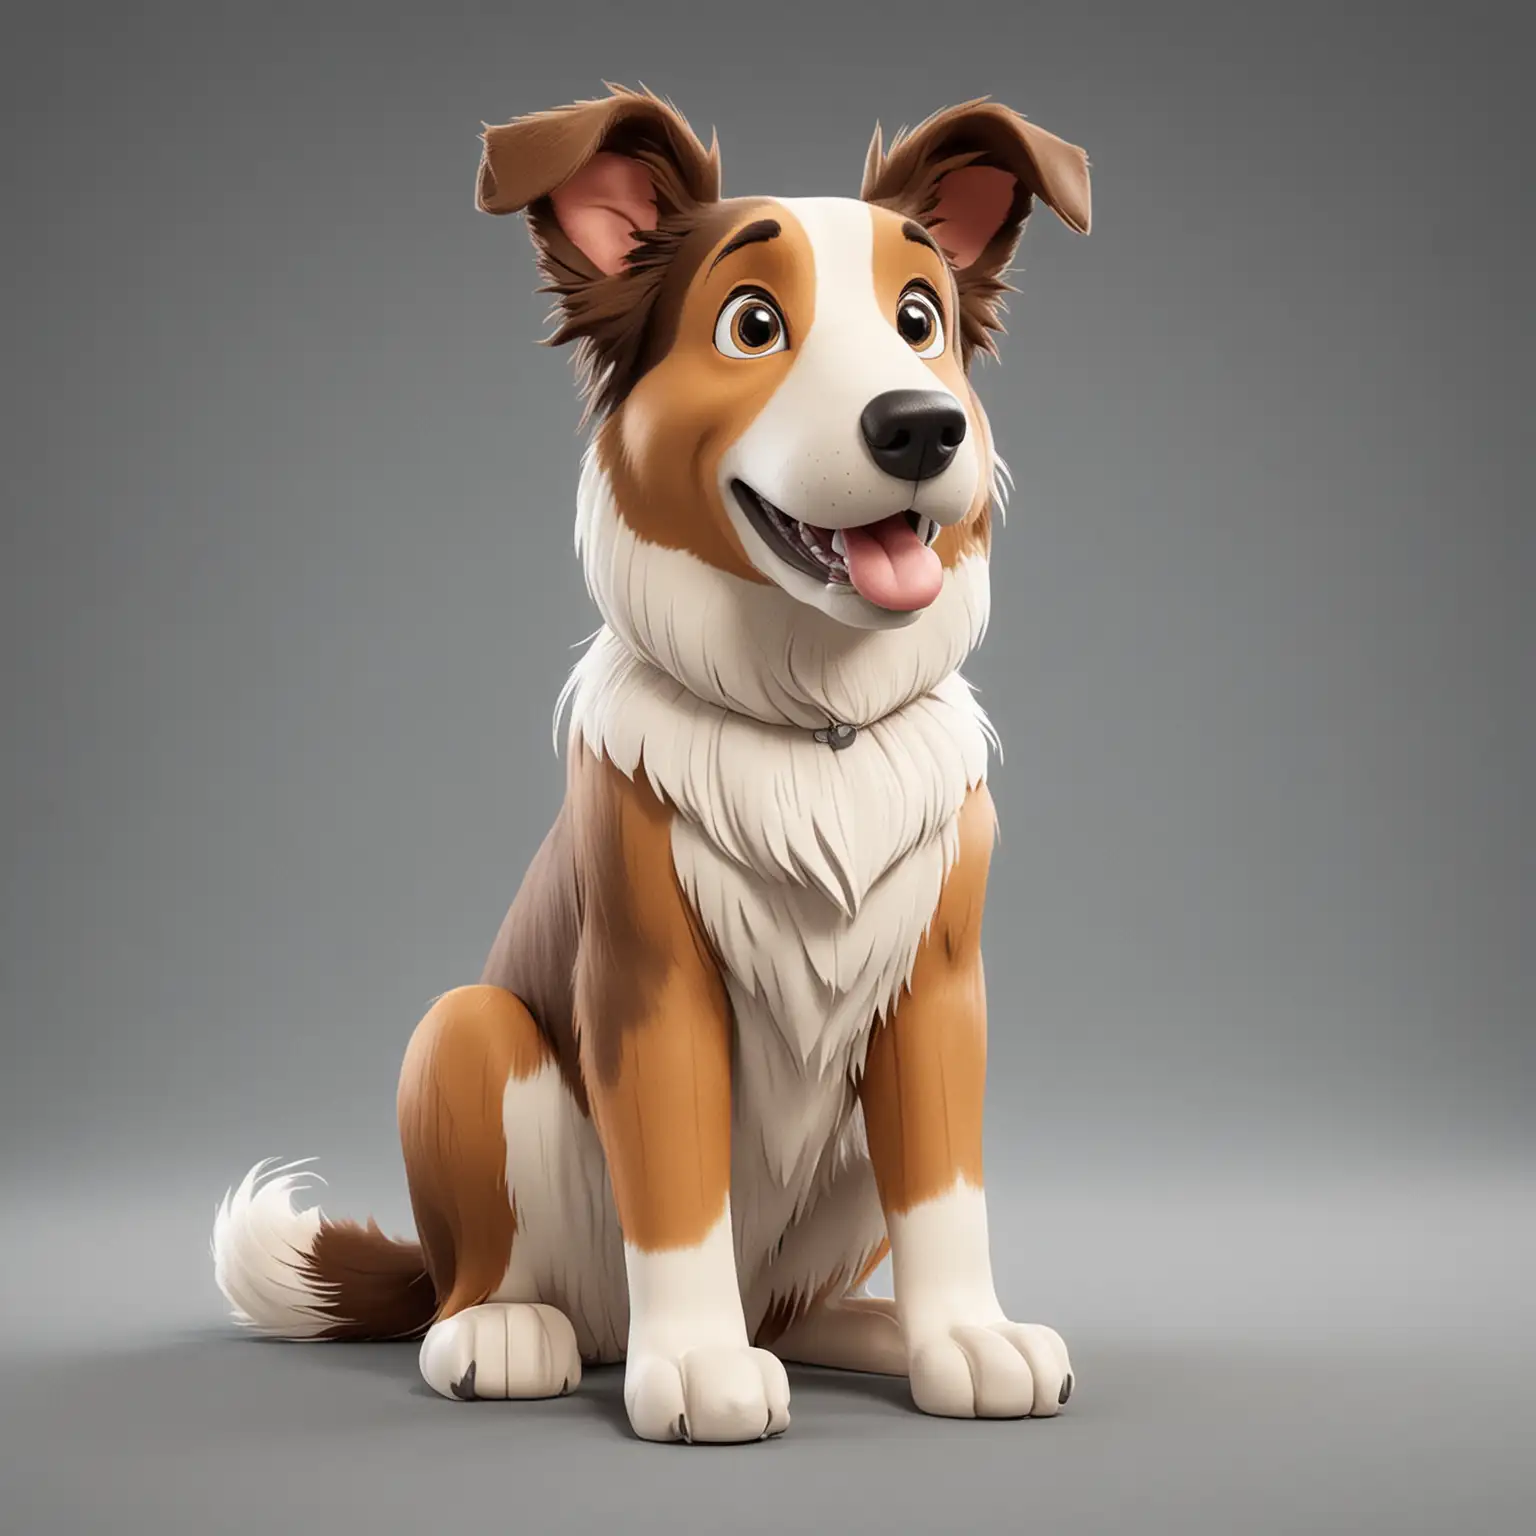 
Сделай Короткошёрстный колли собака
мультяшном стиле в сидячей позе - парода Датская дог

